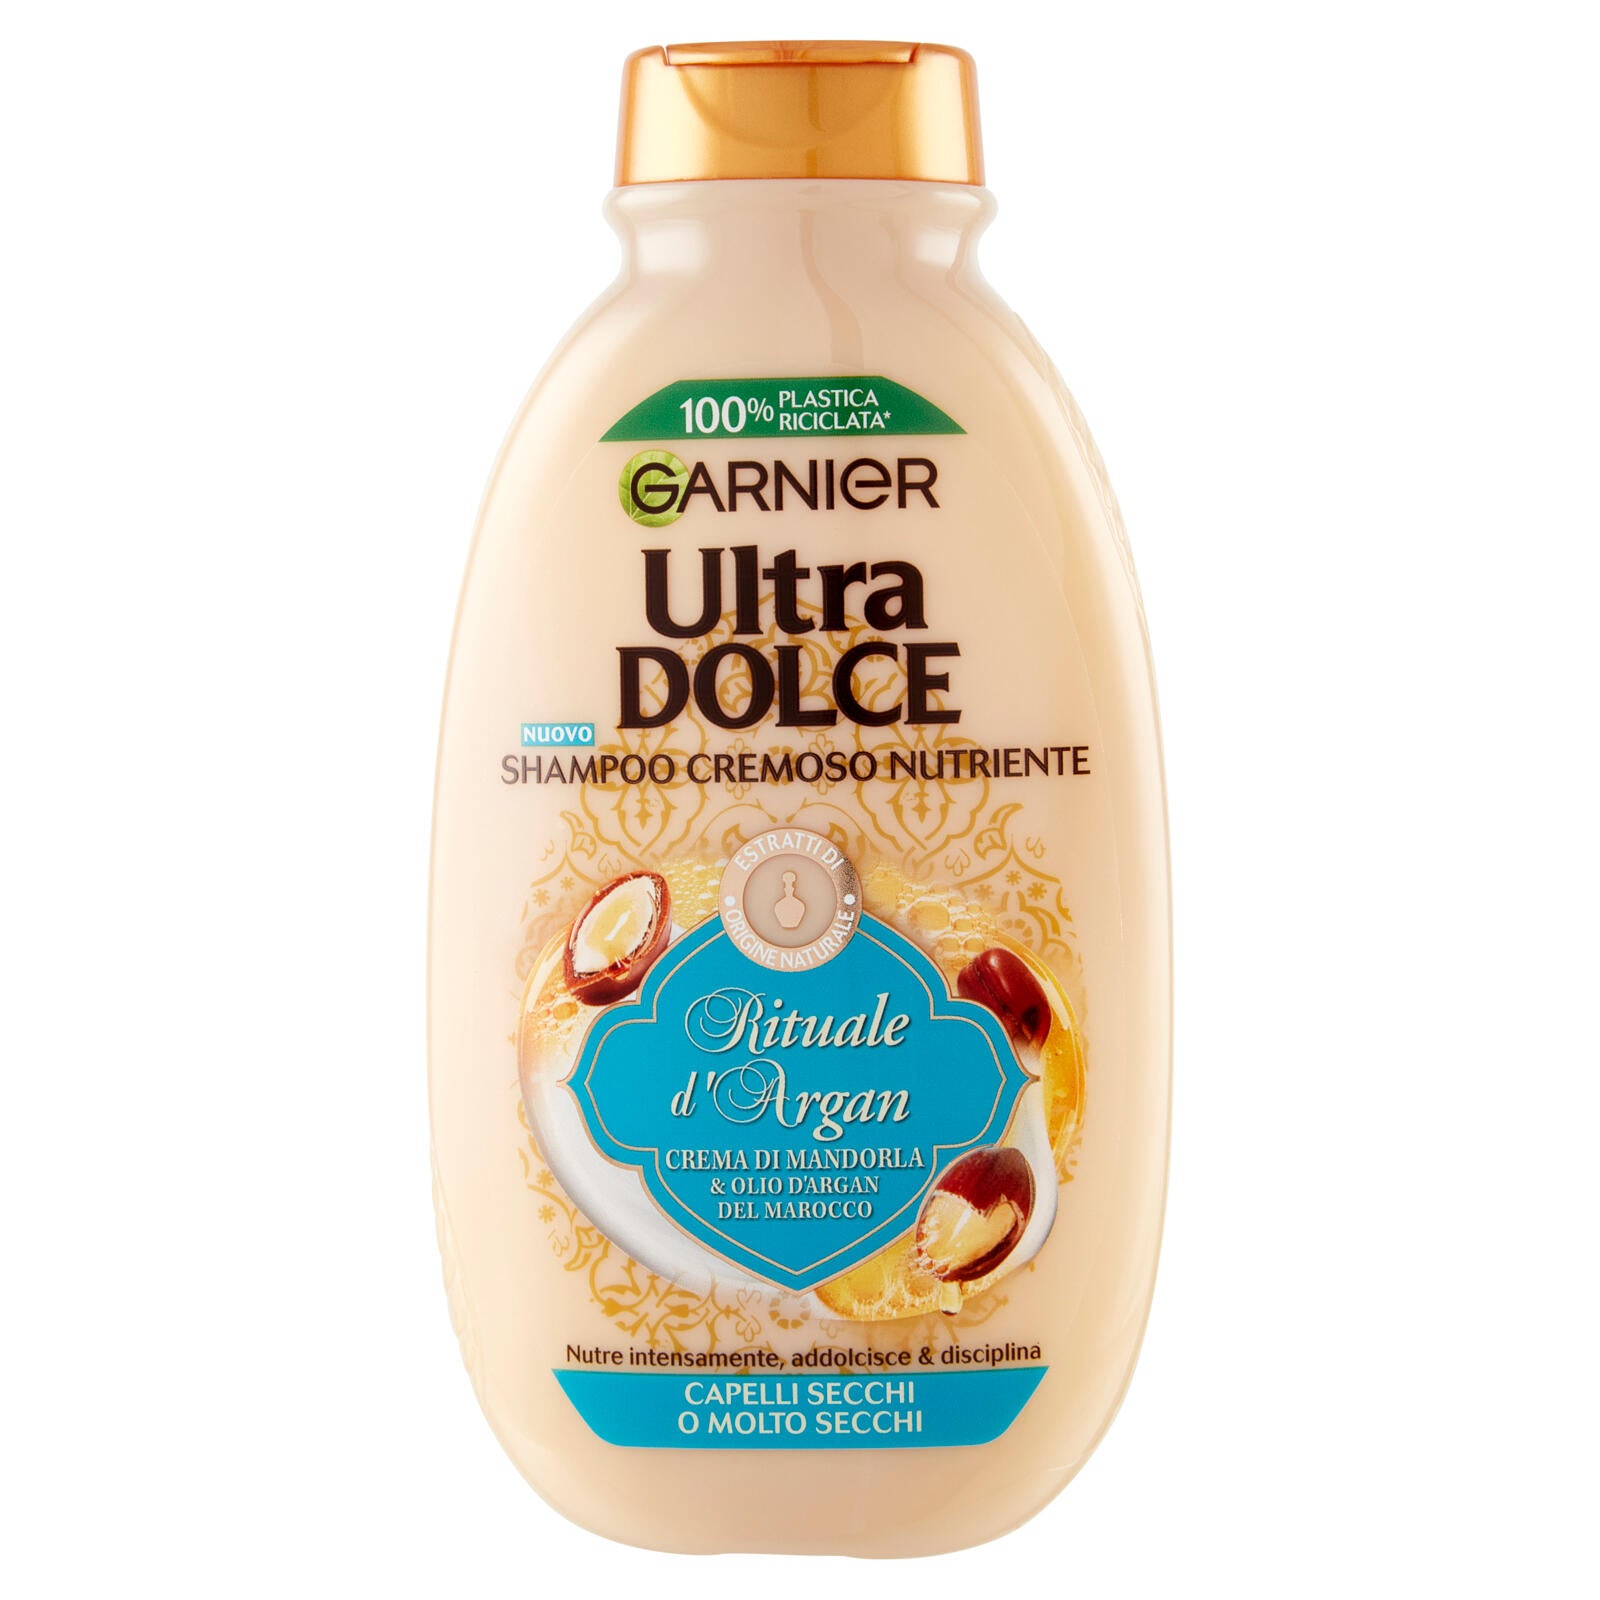 Garnier Ultra Dolce Shampoo con crema di Mandorla e Olio d'argan per capelli molto secchi, 250 ml